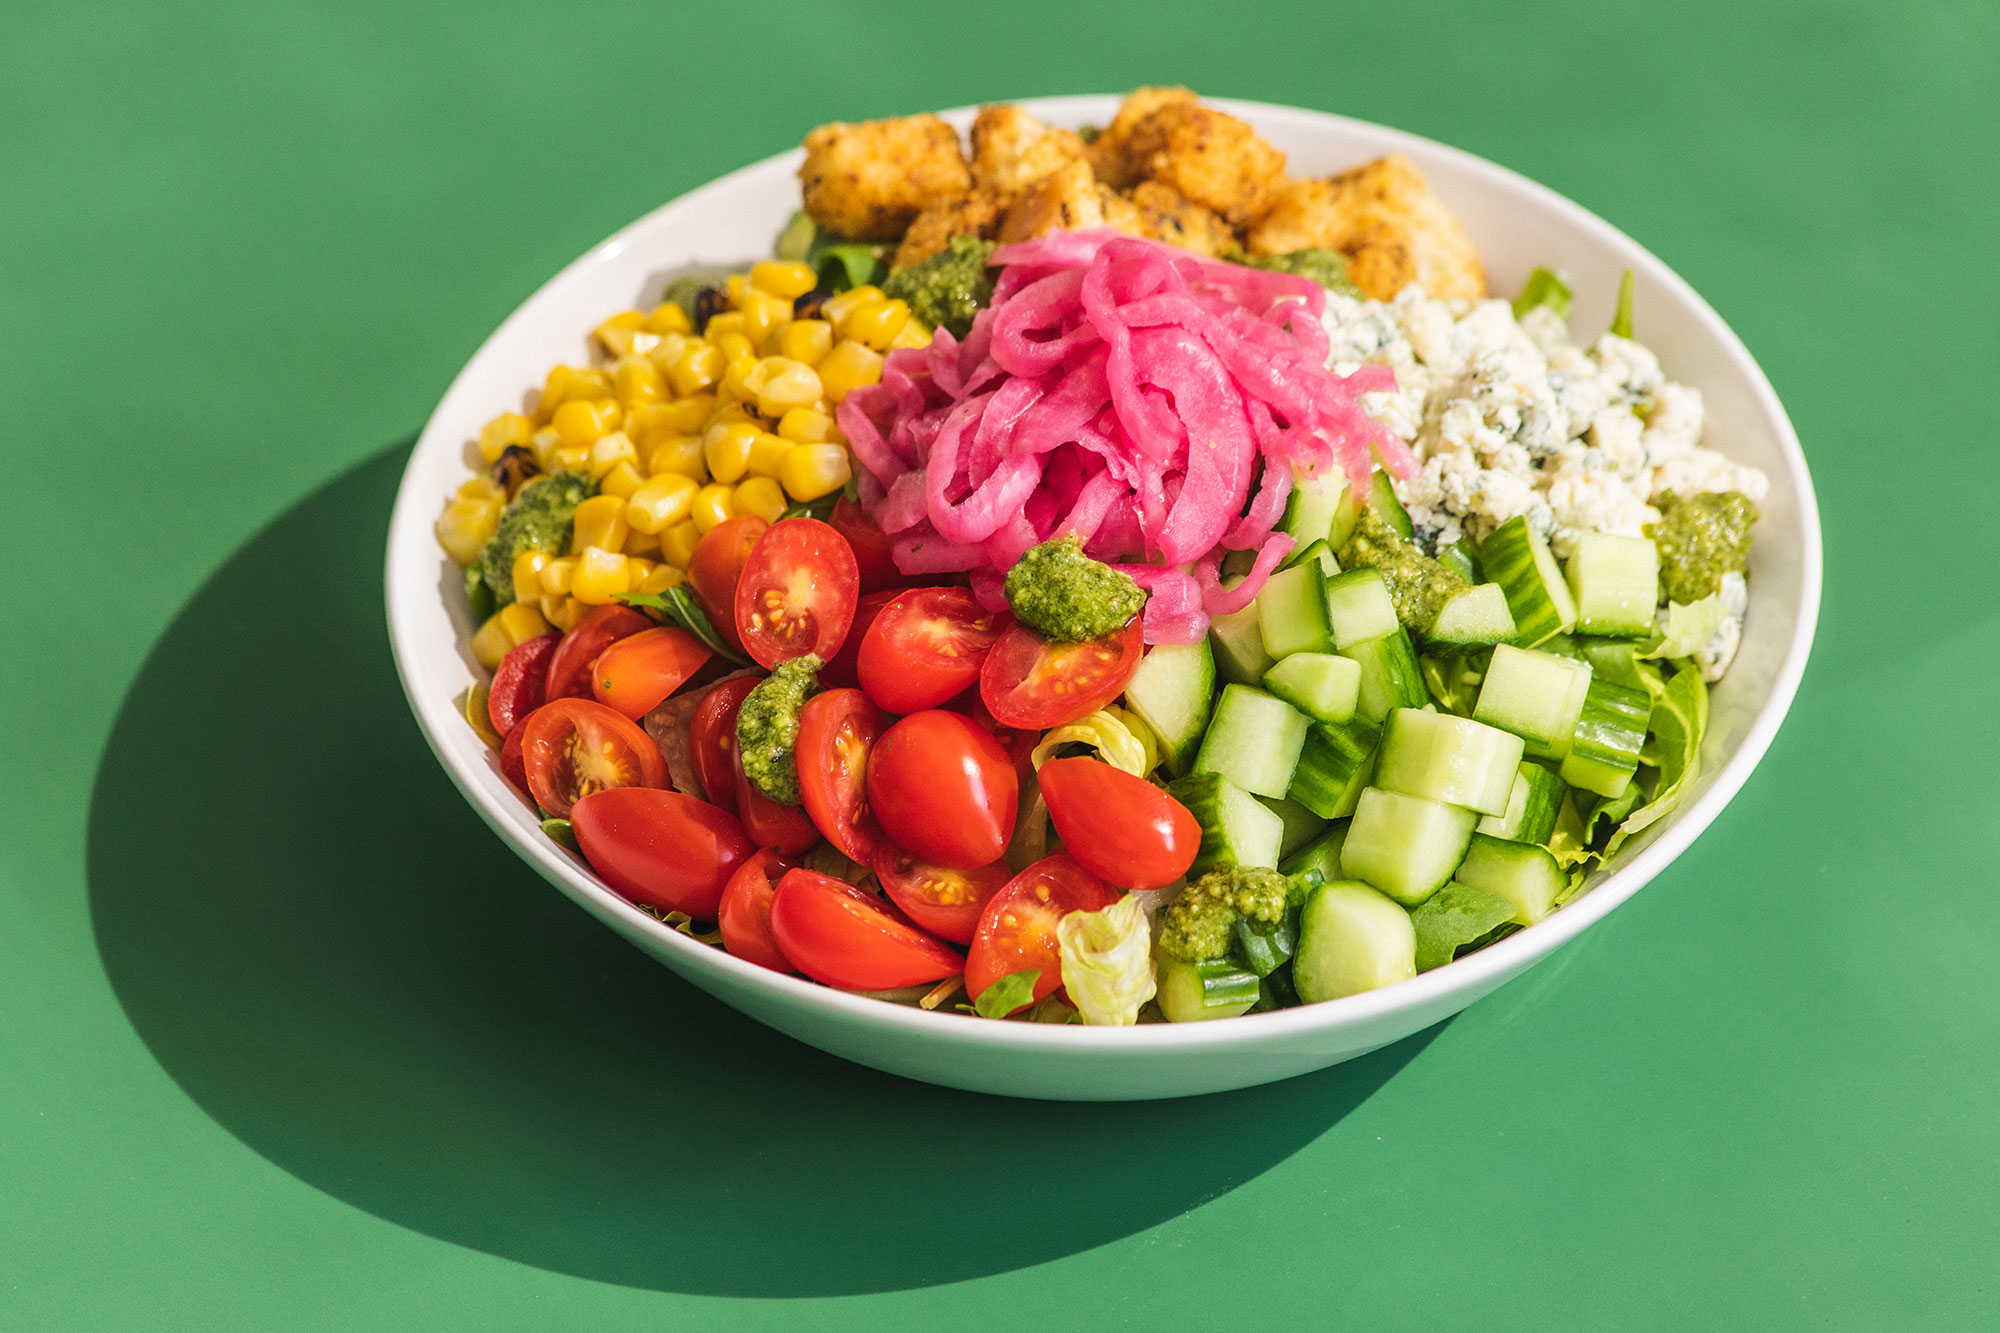 SEA Evergreens Plated Food (salad)